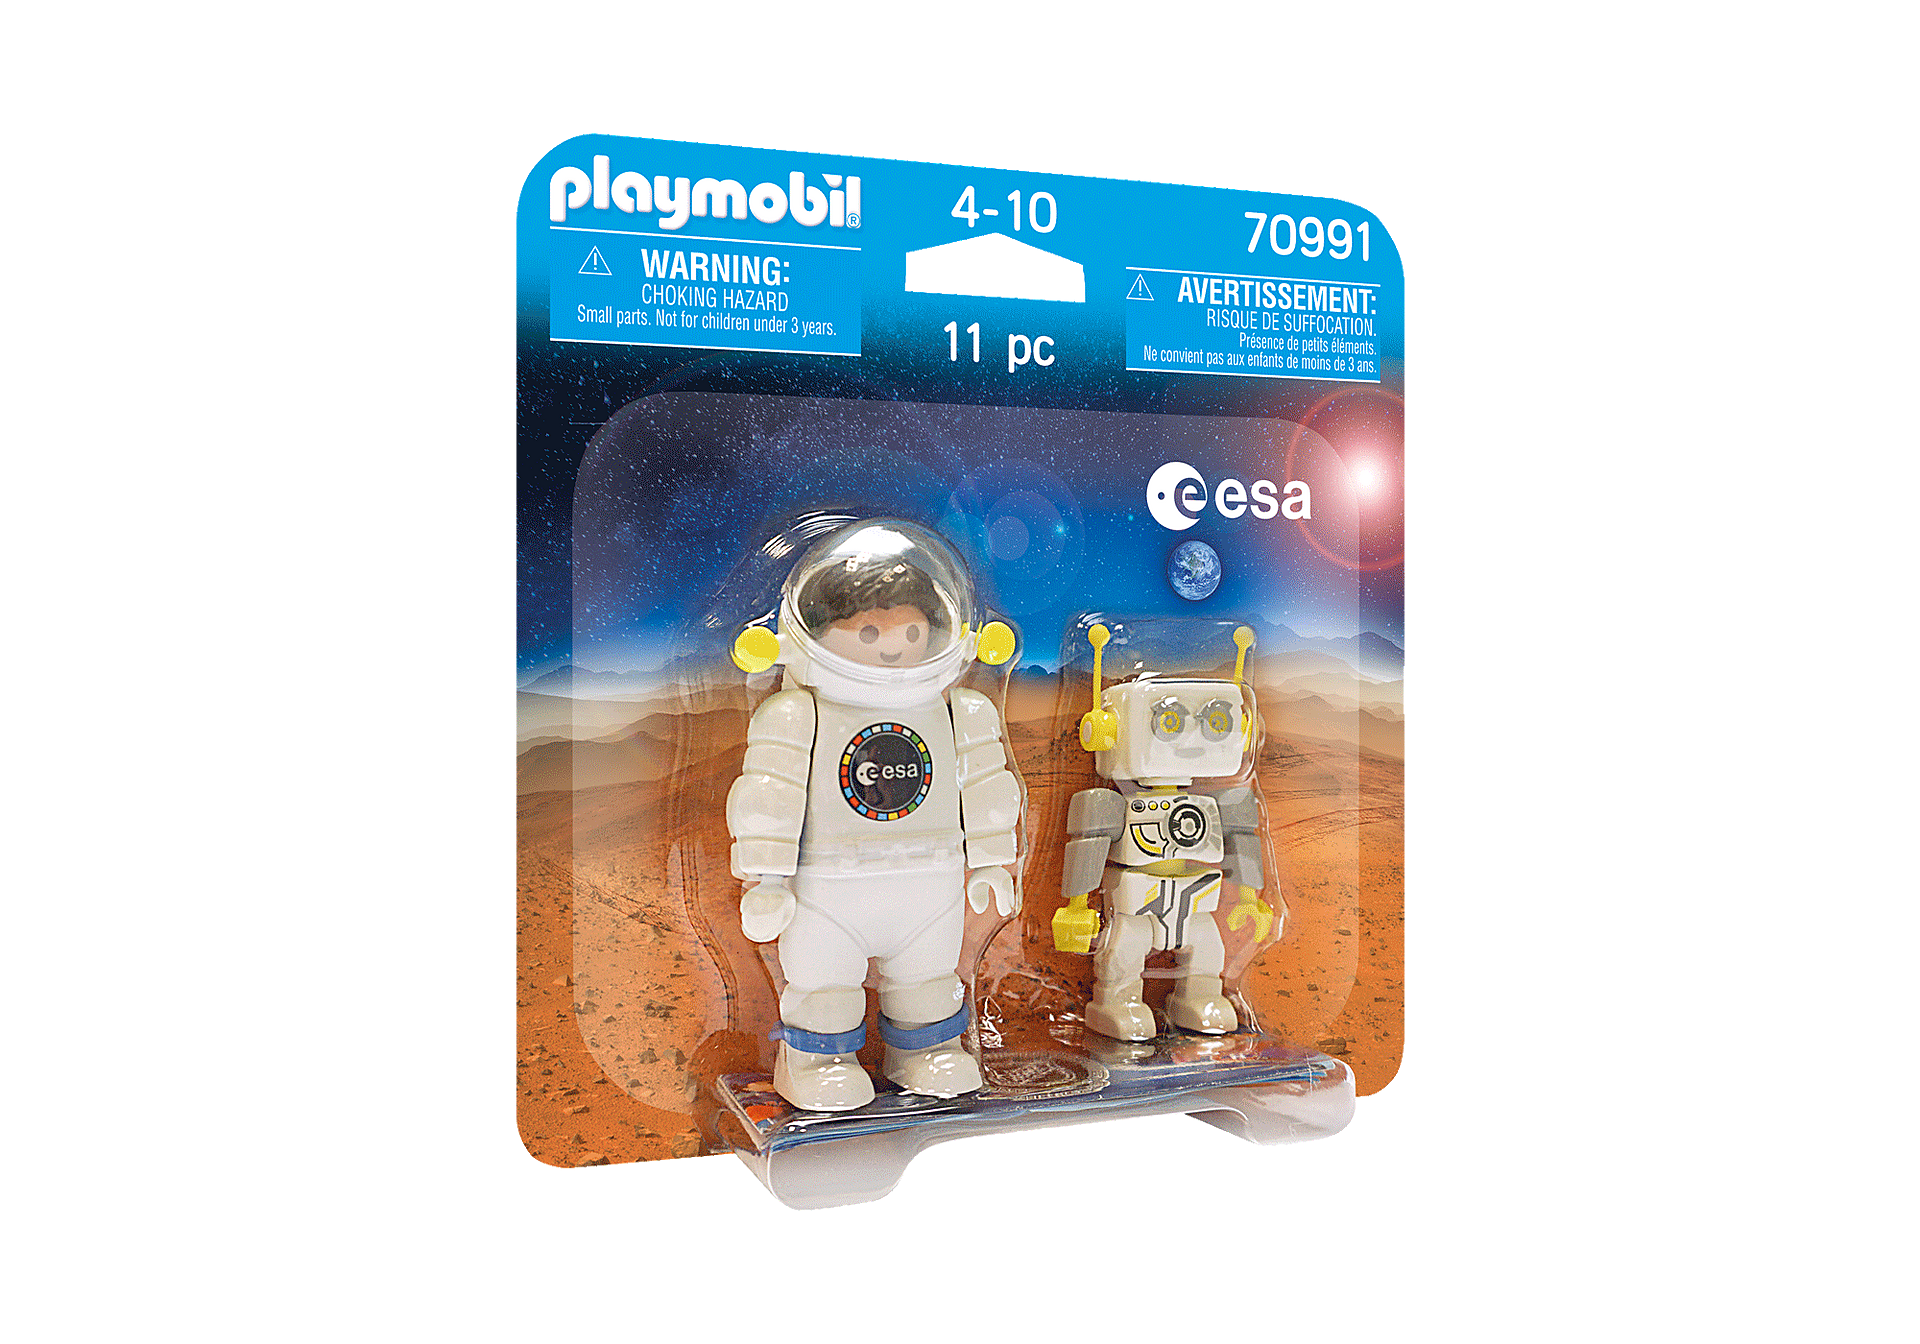 70991 PLAYMOBIL Duo Astronaute ESA et ROBert zoom image2